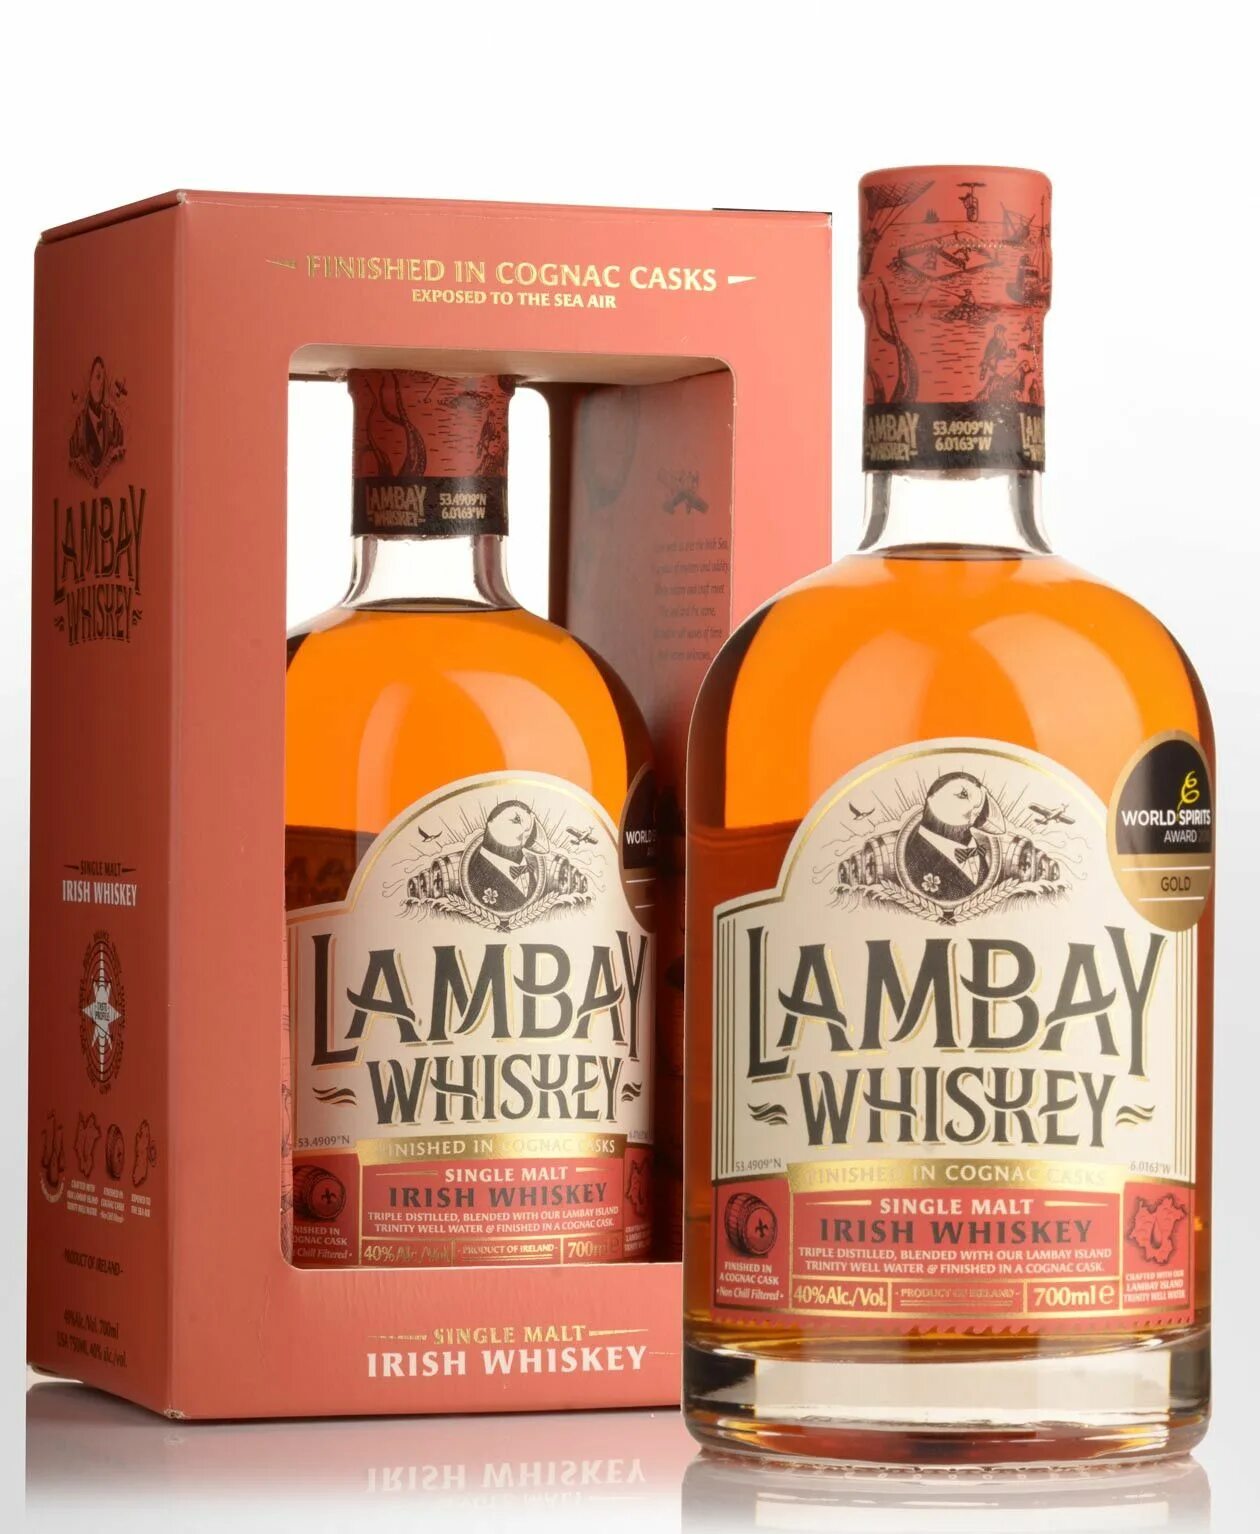 Irish malt. Виски Lambay Malt Irish Whiskey. Виски "Lambay" Malt Irish Whiskey, Gift Box, 0.7 л. Single Malt виски Irish Whiskey. Lambay Whiskey Single Malt.